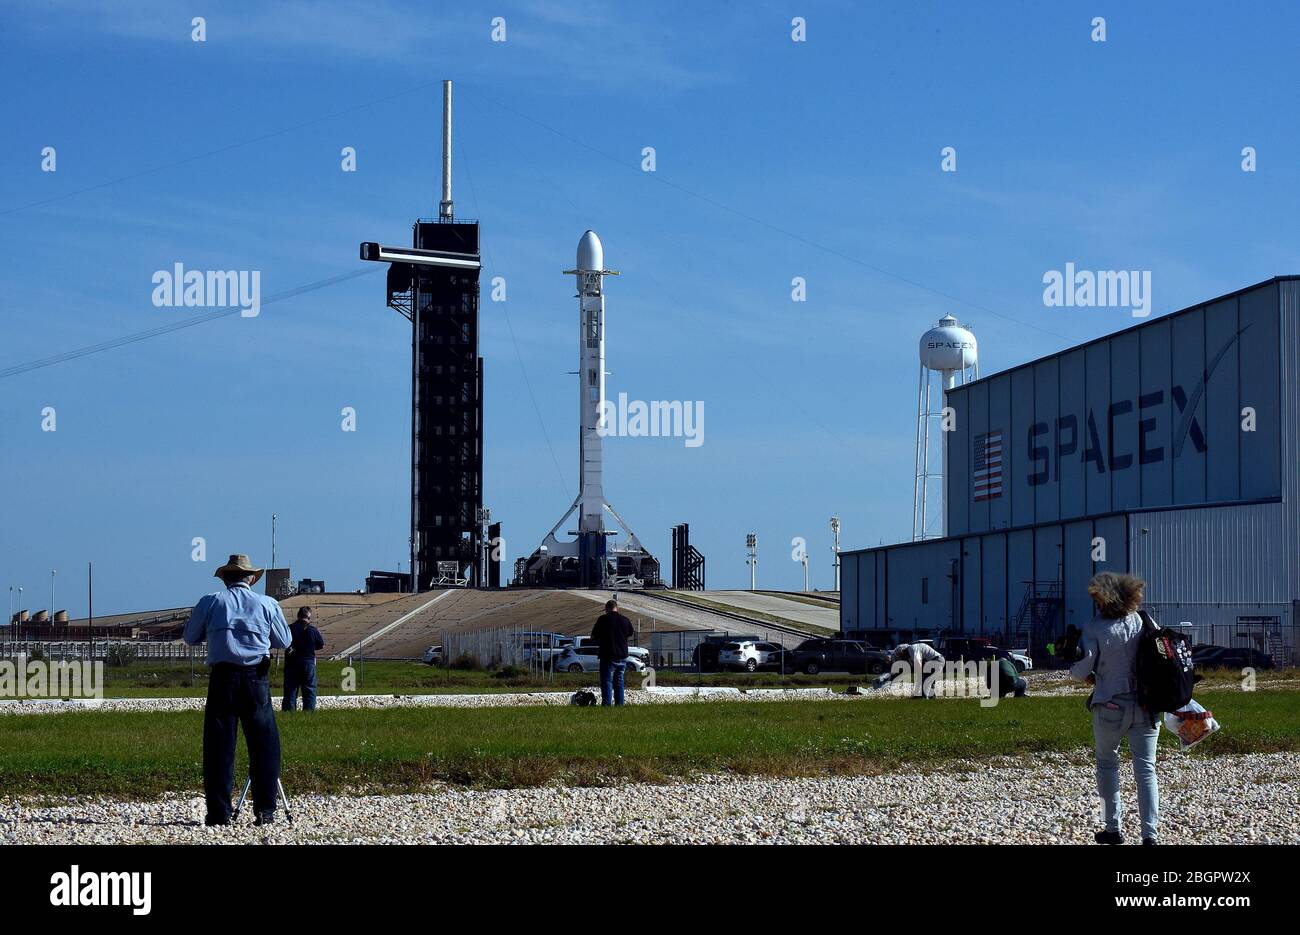 22 aprile 2020 - Kennedy Space Center, Florida, Stati Uniti - UN razzo SpaceX Falcon 9 che trasporta il settimo lotto di 60 satelliti Starlink che forniranno servizi Internet globali stand pronti per il lancio il 22 aprile 2020 presso il PAD 39A al Kennedy Space Center in Florida. (Paul Hennessy/Alamy) Credit: Paul Hennessy/Alamy Live News Foto Stock